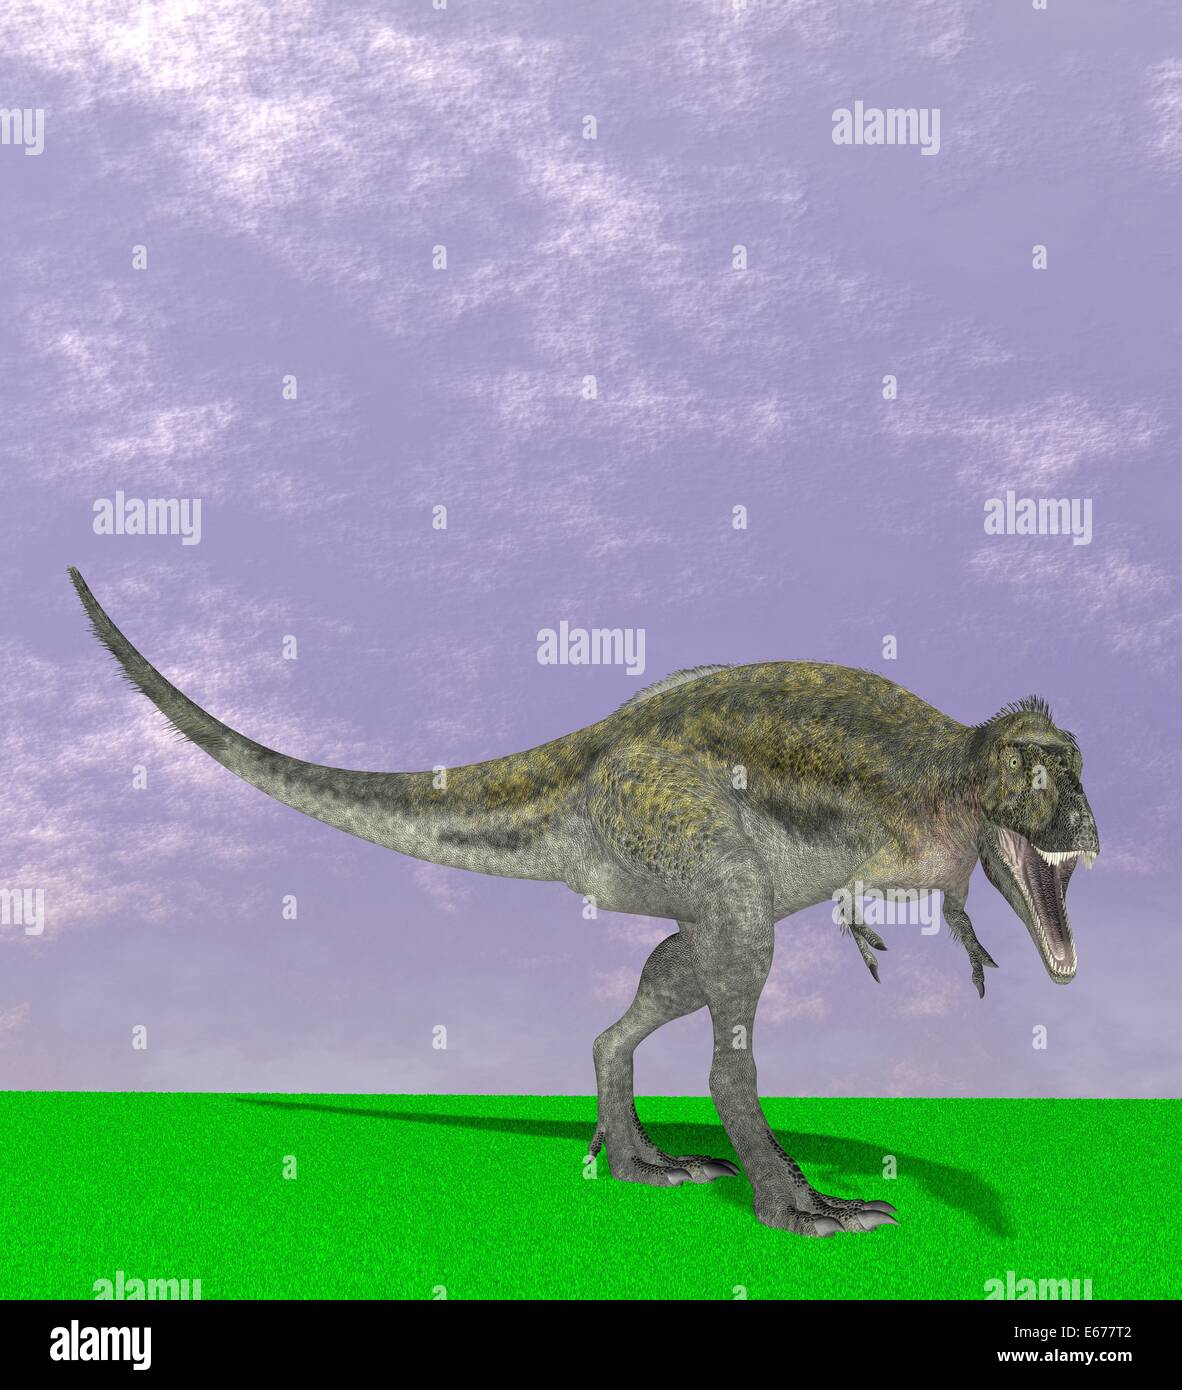 Dinosaurier Alioramus / dinosaur Alioramus Stock Photo